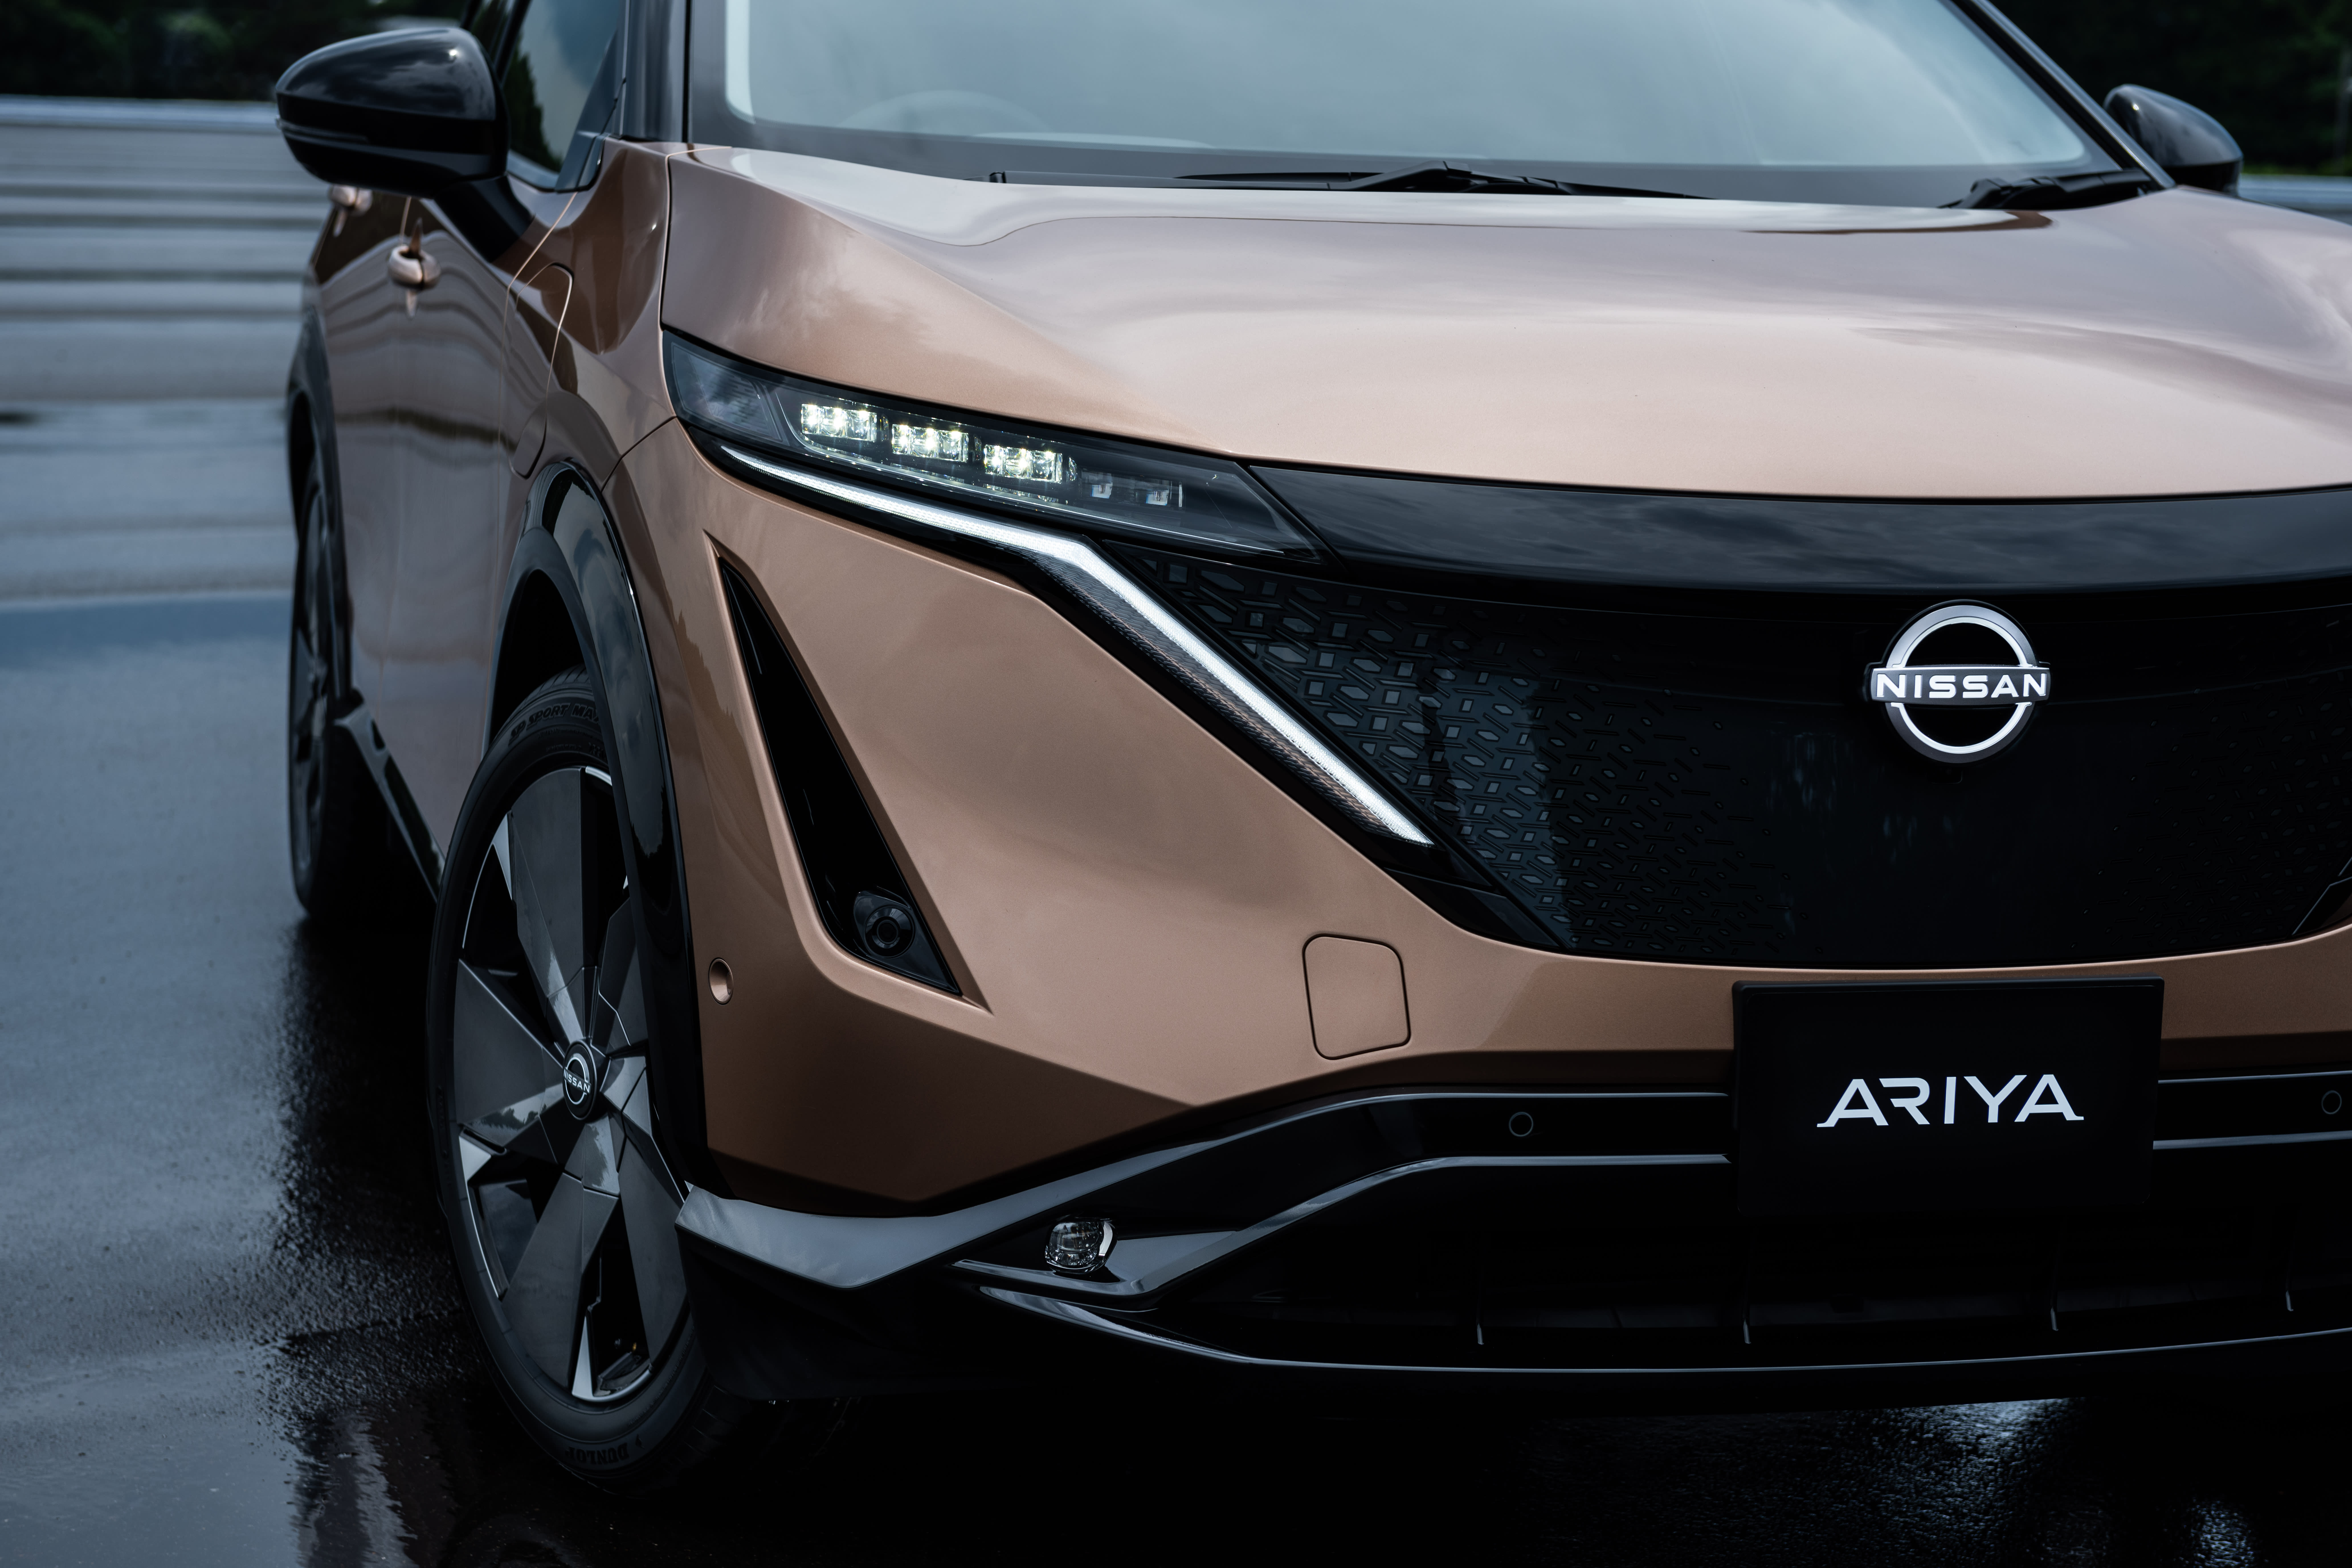 Nissan unveils all-electric Ariya crossover under turnaround plan